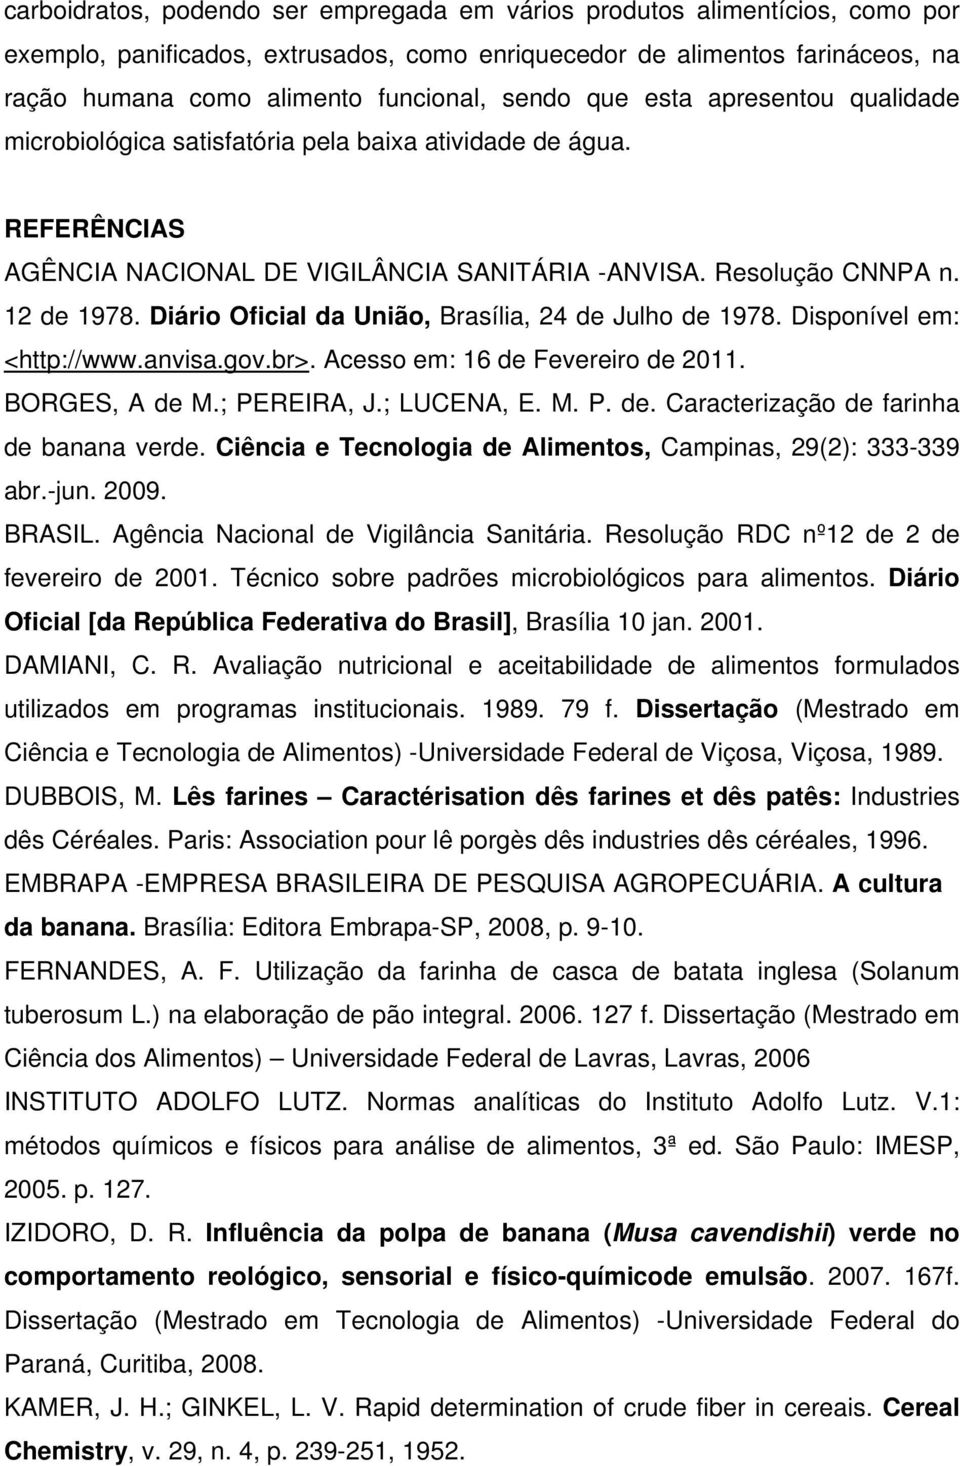 Diário Oficial da União, Brasília, 24 de Julho de 1978. Disponível em: <http://www.anvisa.gov.br>. Acesso em: 16 de Fevereiro de 2011. BORGES, A de M.; PEREIRA, J.; LUCENA, E. M. P. de. Caracterização de farinha de banana verde.